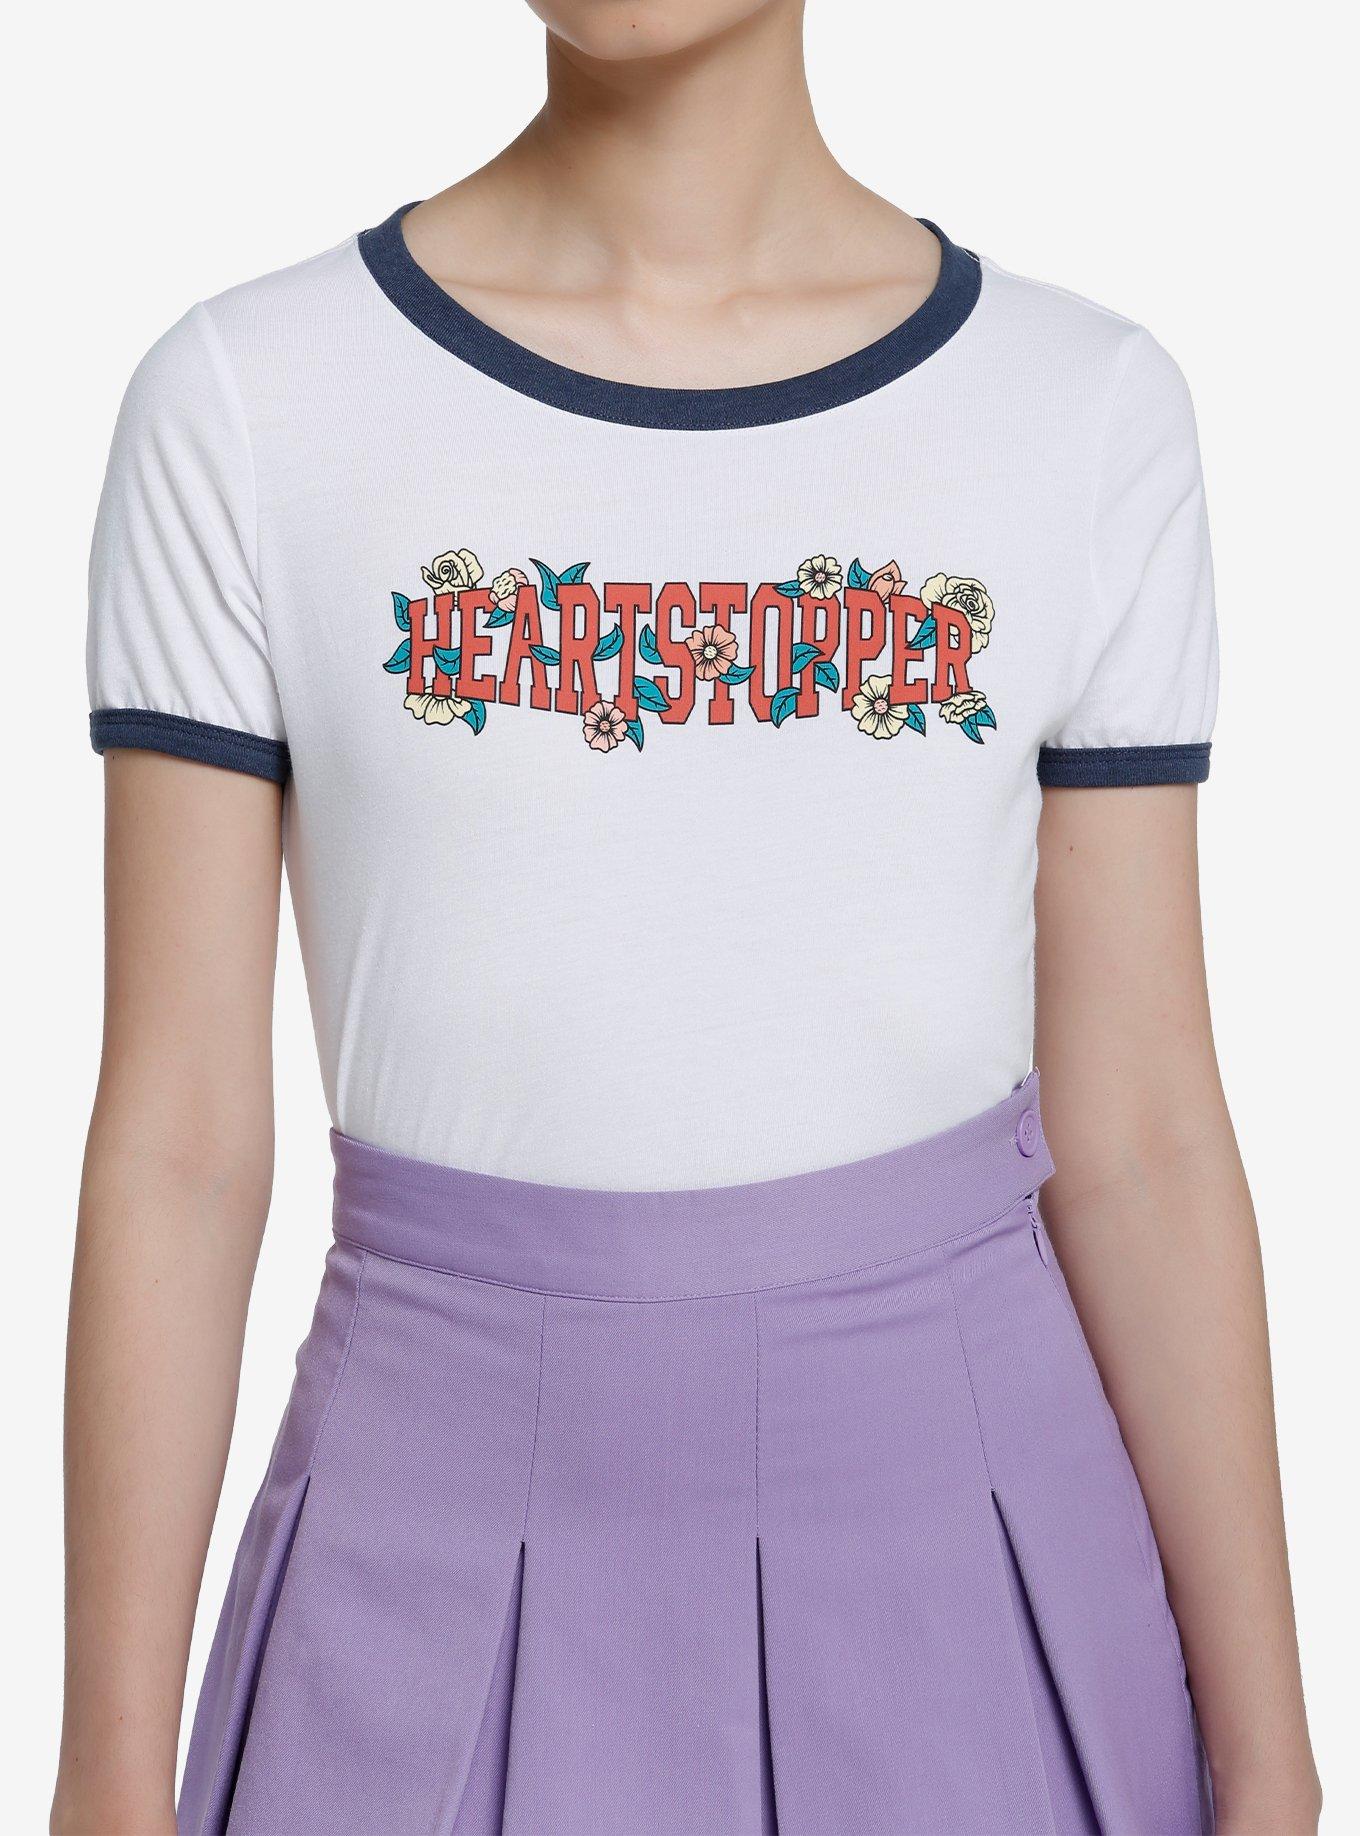 Teenage Mutant Ninja Turtles Group Portrait Ringer T-Shirt